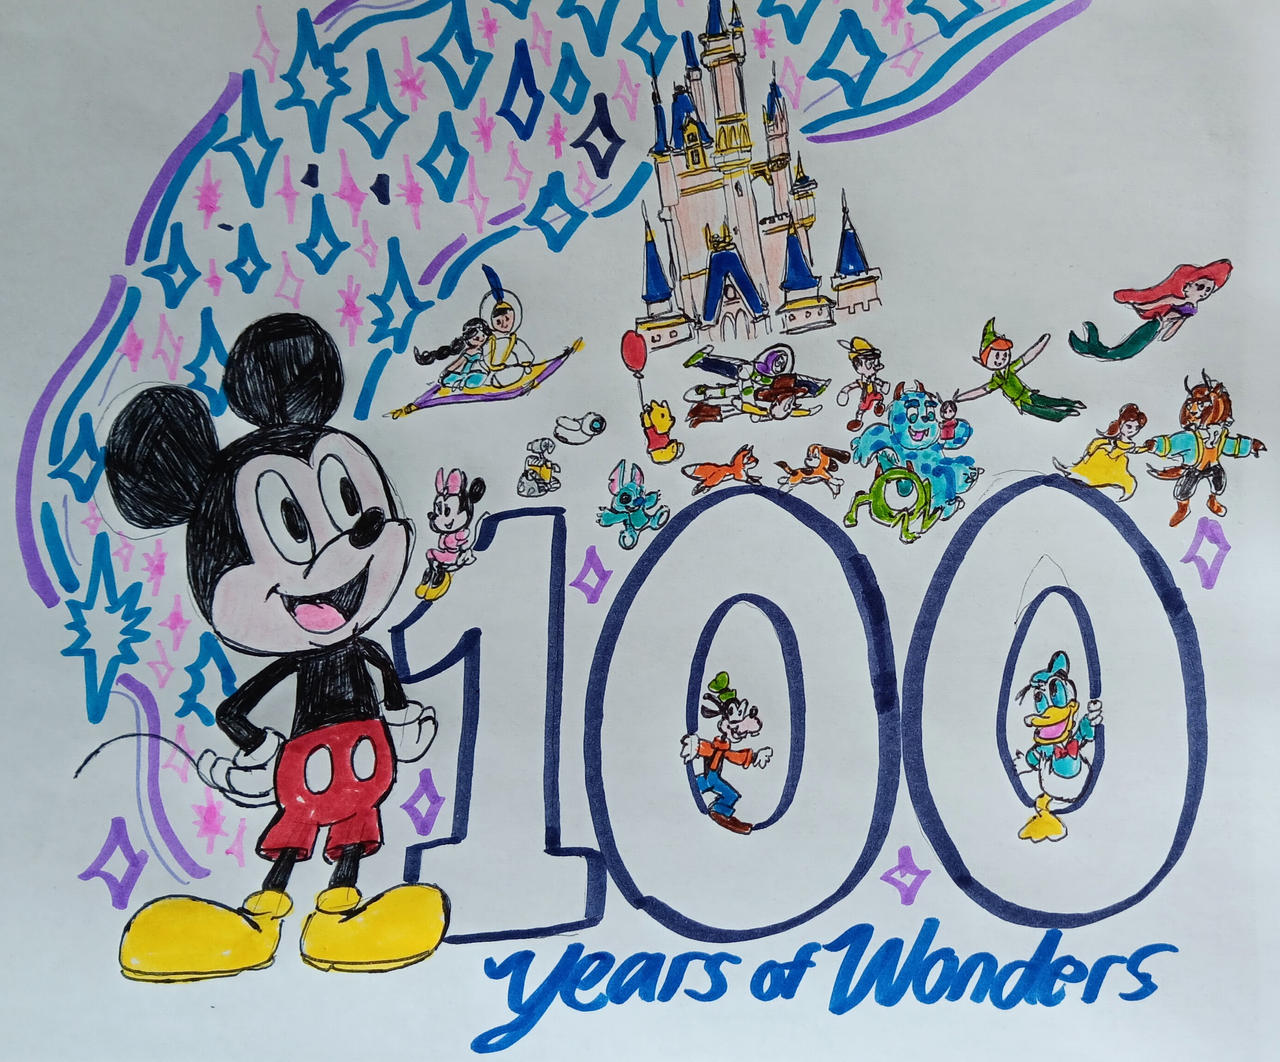 Disney 100 Years of Wonders by Disneydude94 on DeviantArt